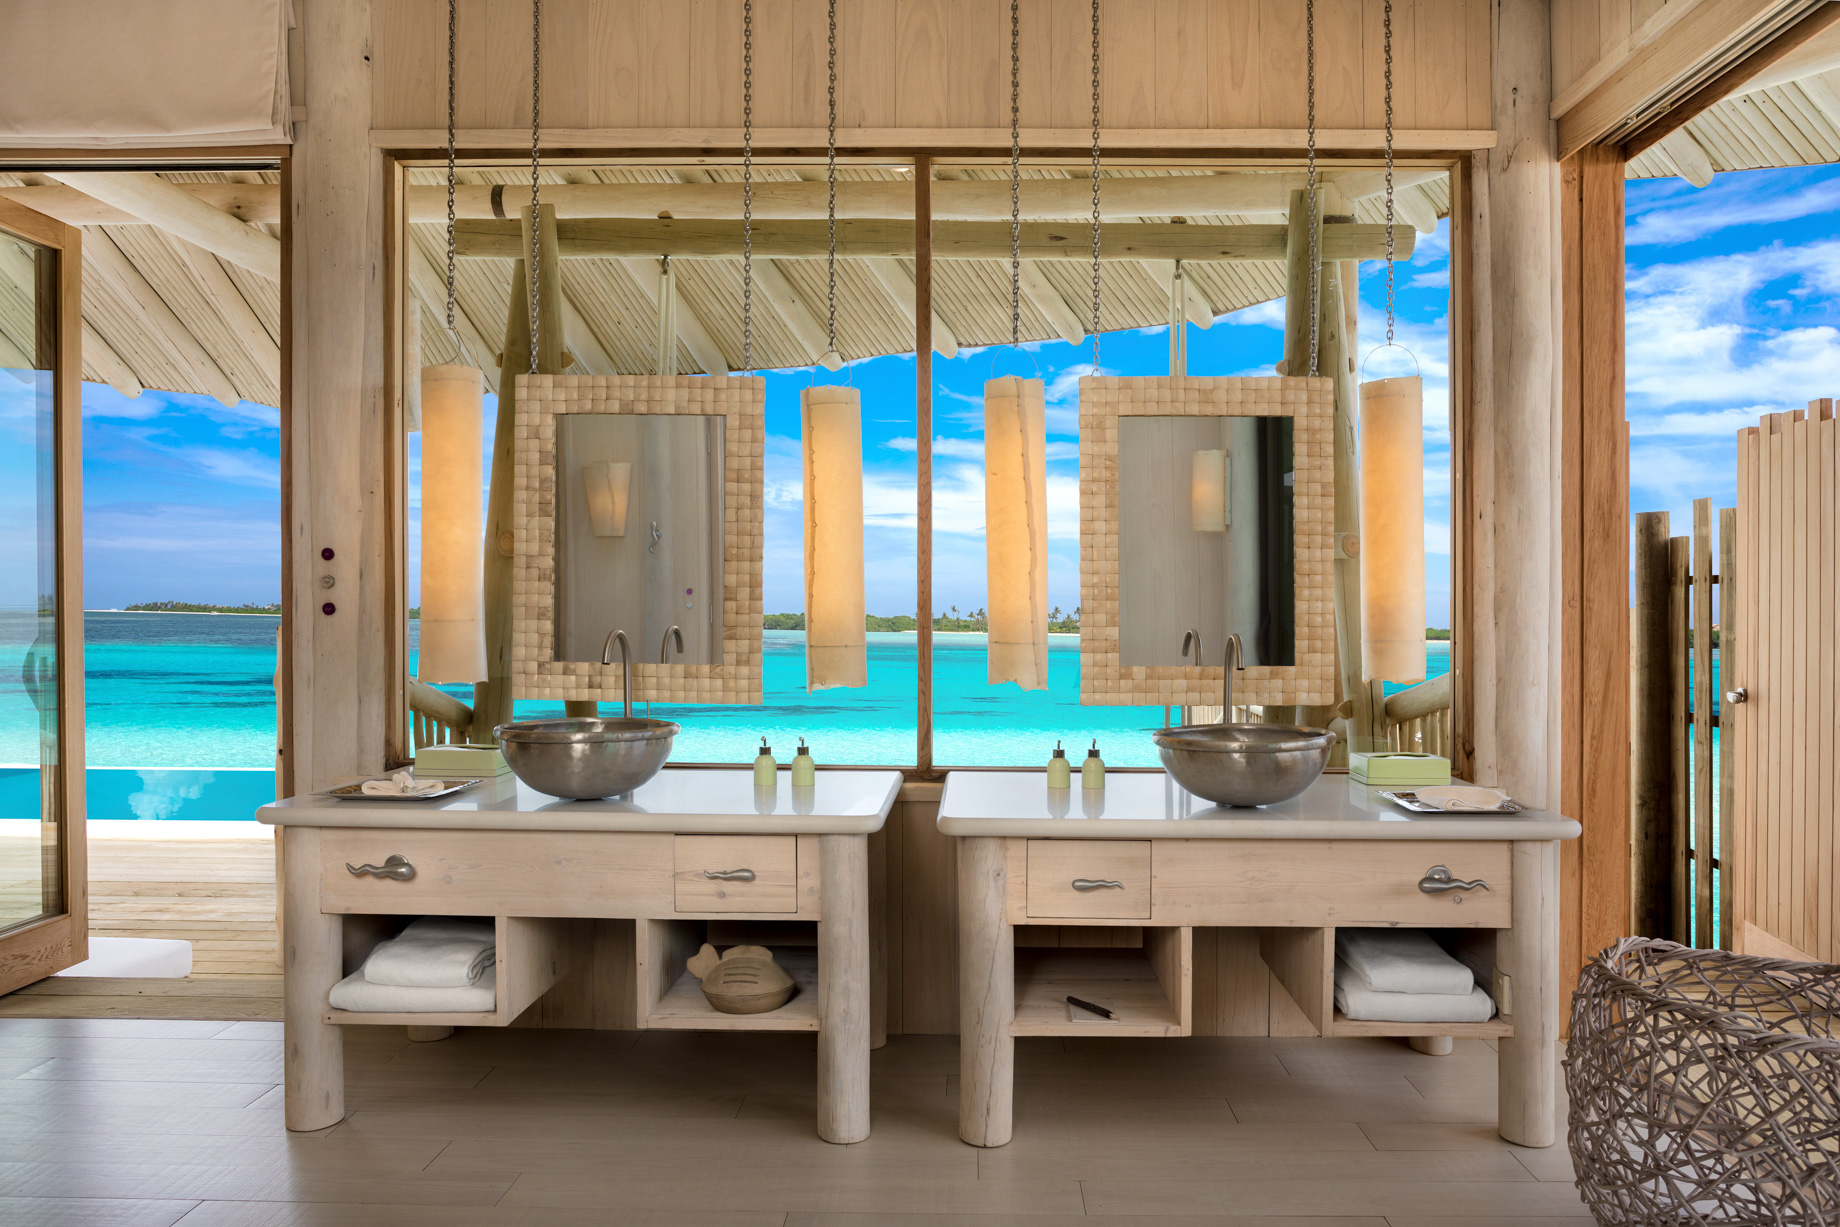 Soneva Jani Resort – Noonu Atoll, Medhufaru, Maldives – Chapter Two – 1 Bedroom Water Reserve Oceanview Bathroom Vanity